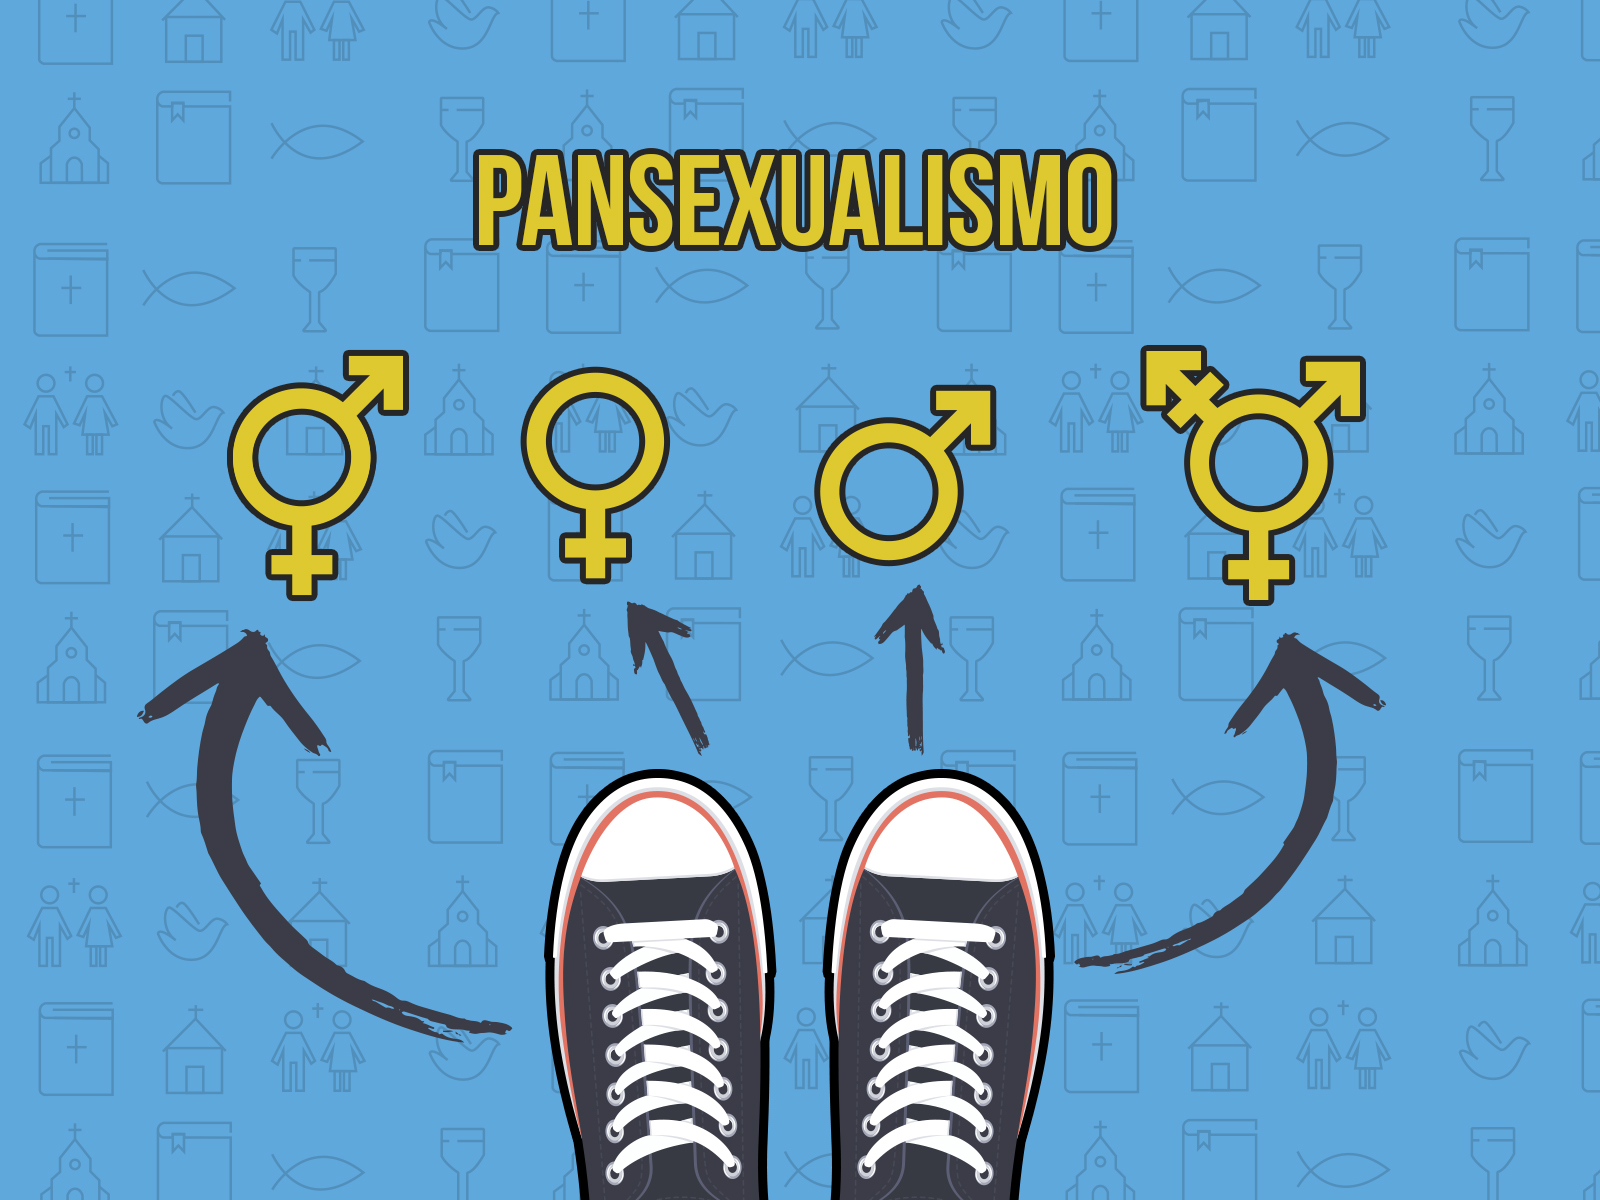 Como viver a pureza face ao pansexualismo?